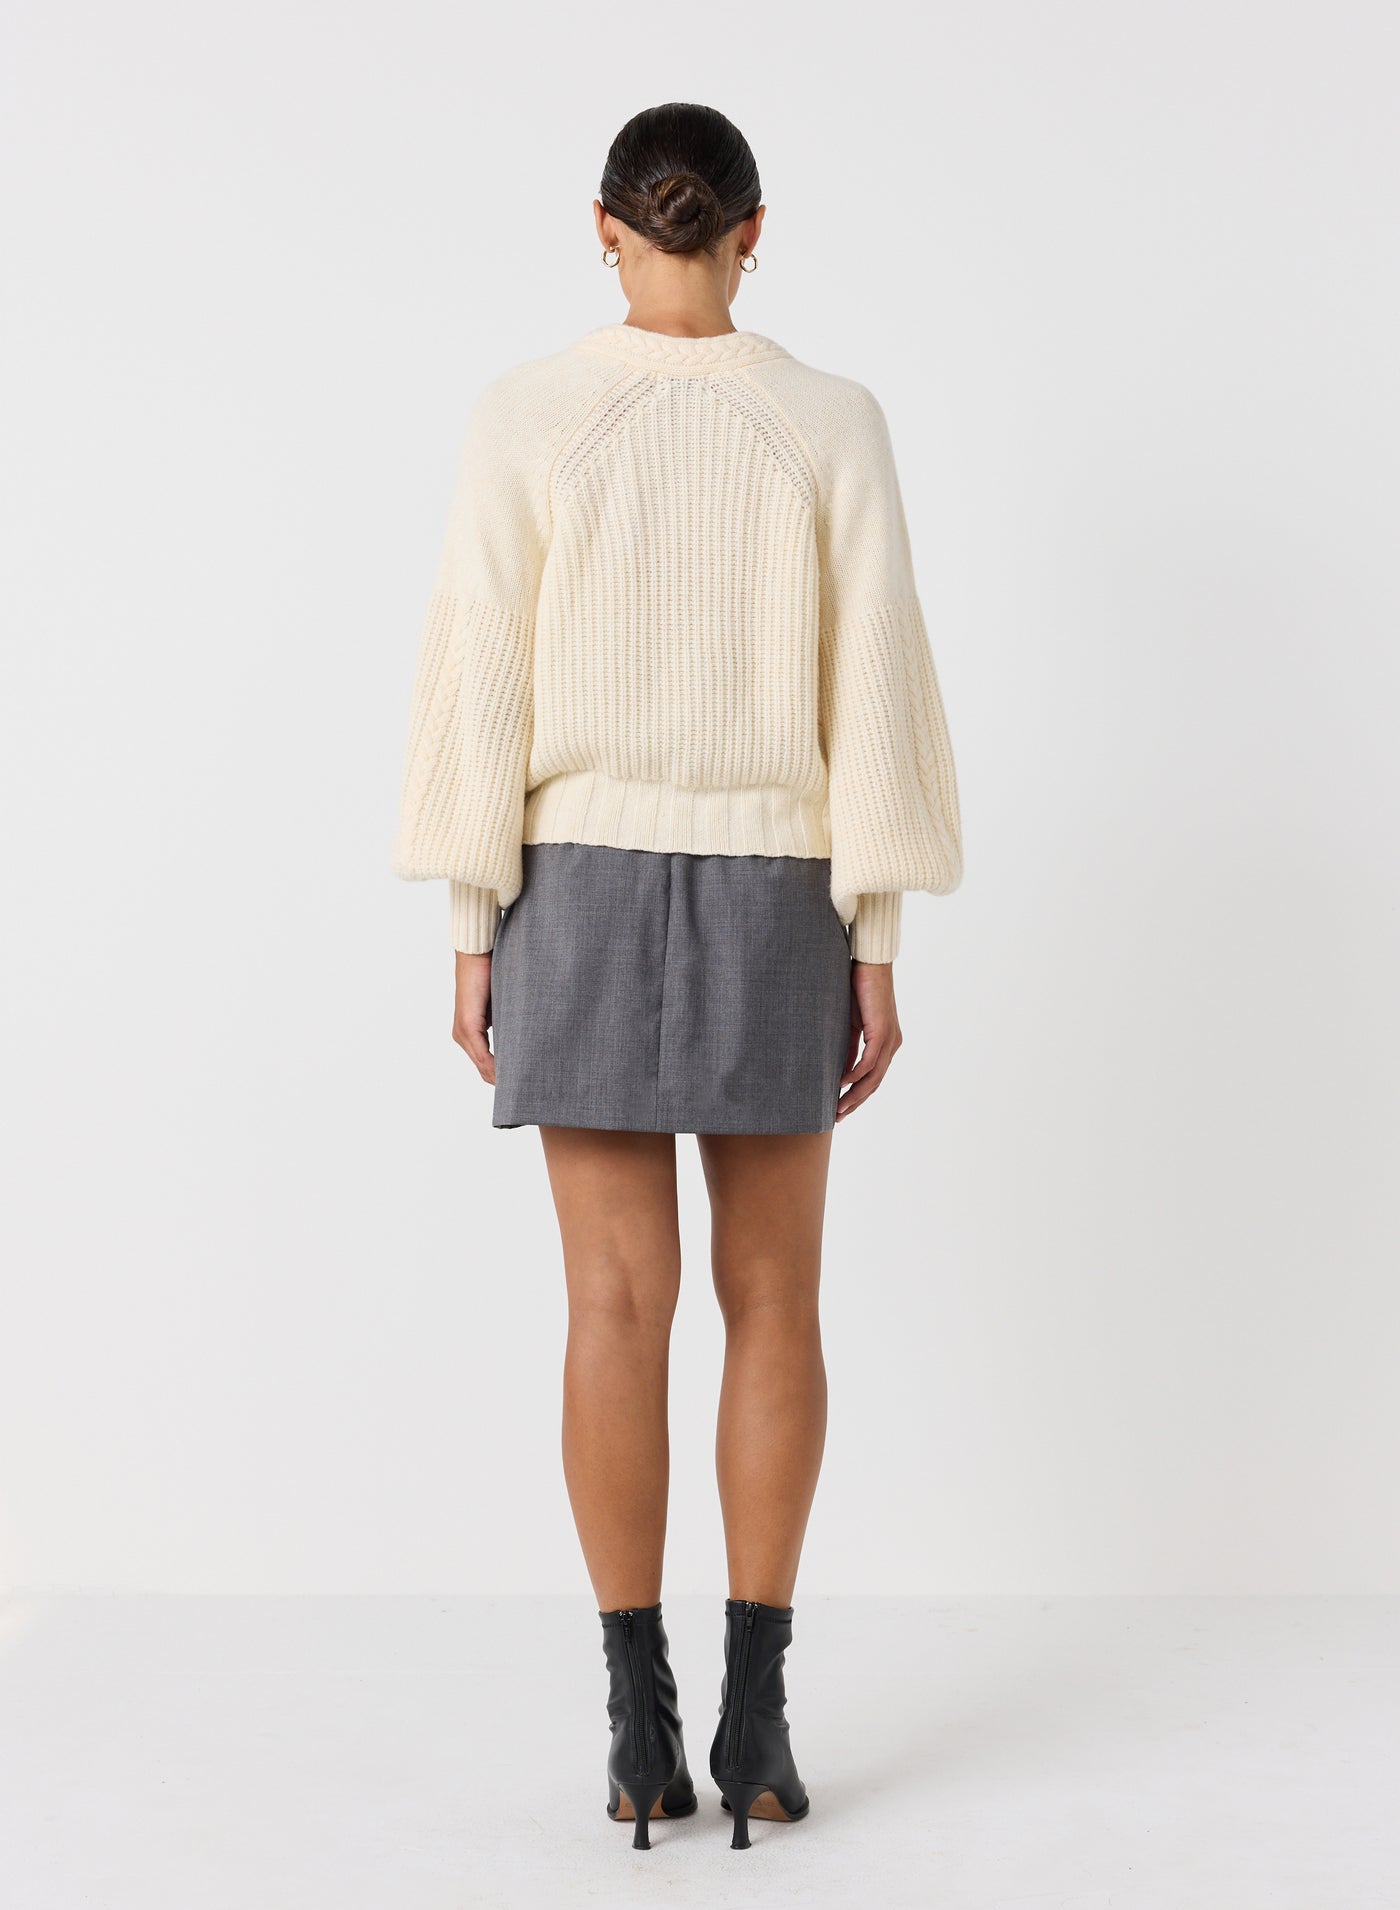 Bronwyn Wool Knit Cardigan | Cream | Restock